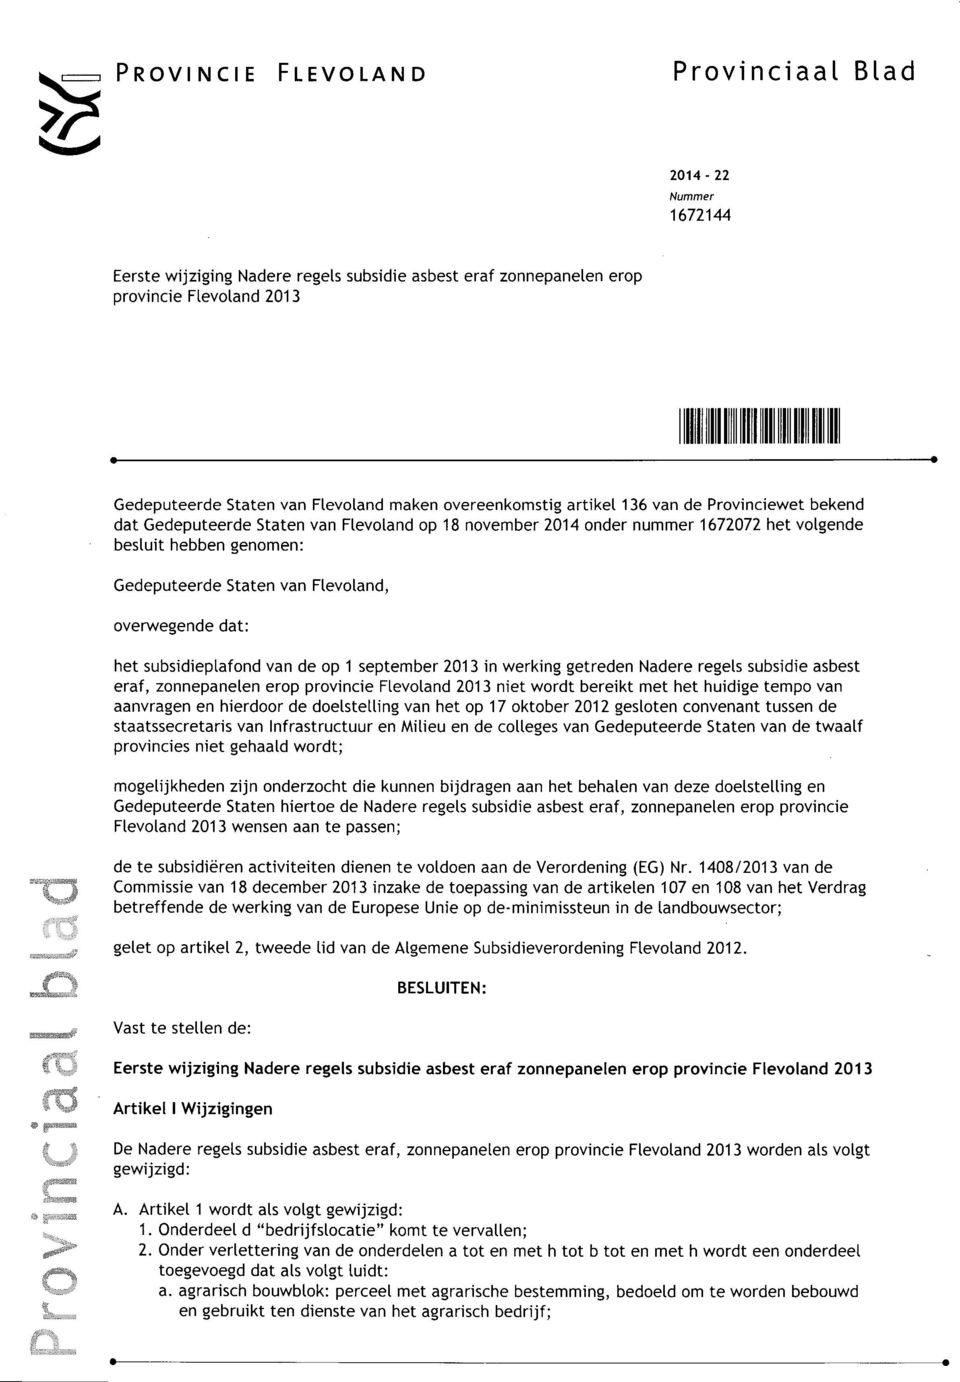 subsidieplafond van de op 1 september 2013 in werking getreden Nadere regels subsidie asbest eraf, zonnepanelen erop provincie Flevoland 2013 niet wordt bereikt met het huidige tempo van aanvragen en